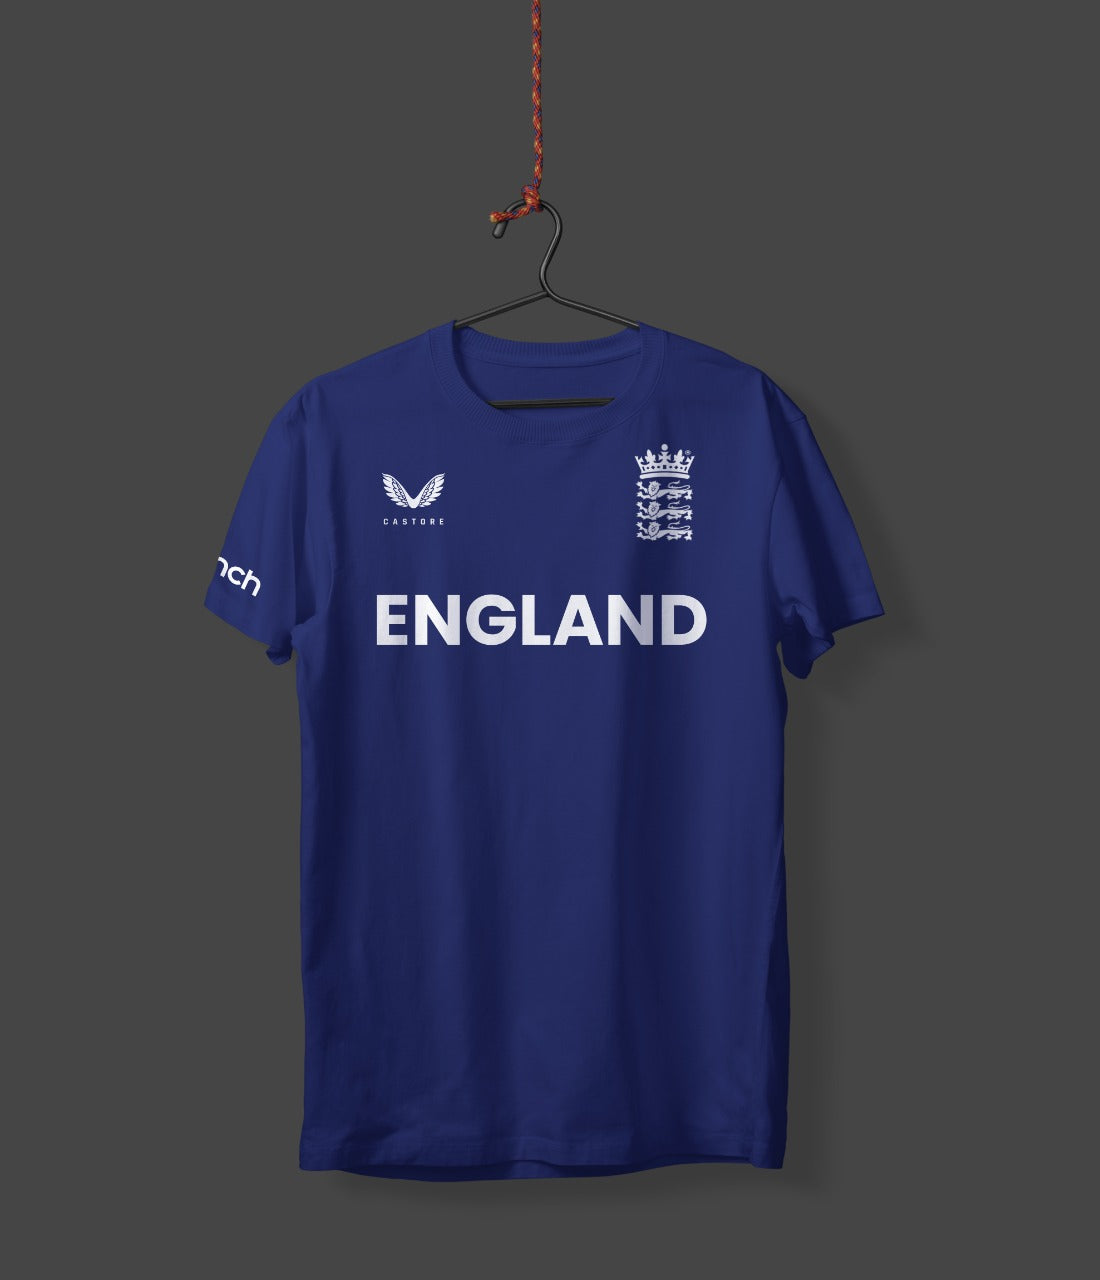 England winners T shirt